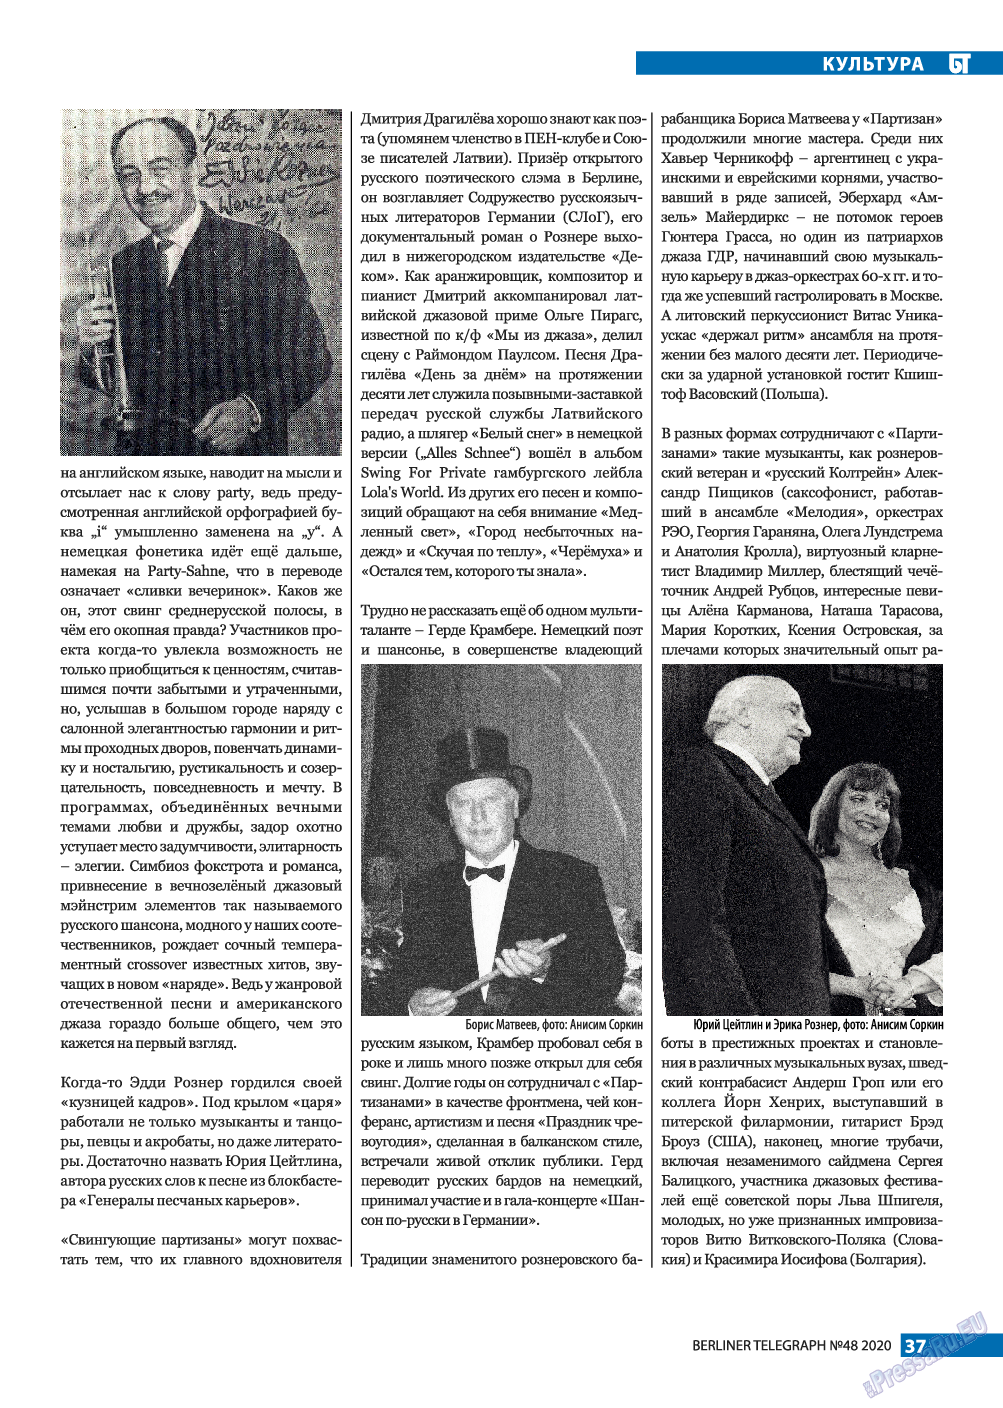 Берлинский телеграф, журнал. 2020 №48 стр.37